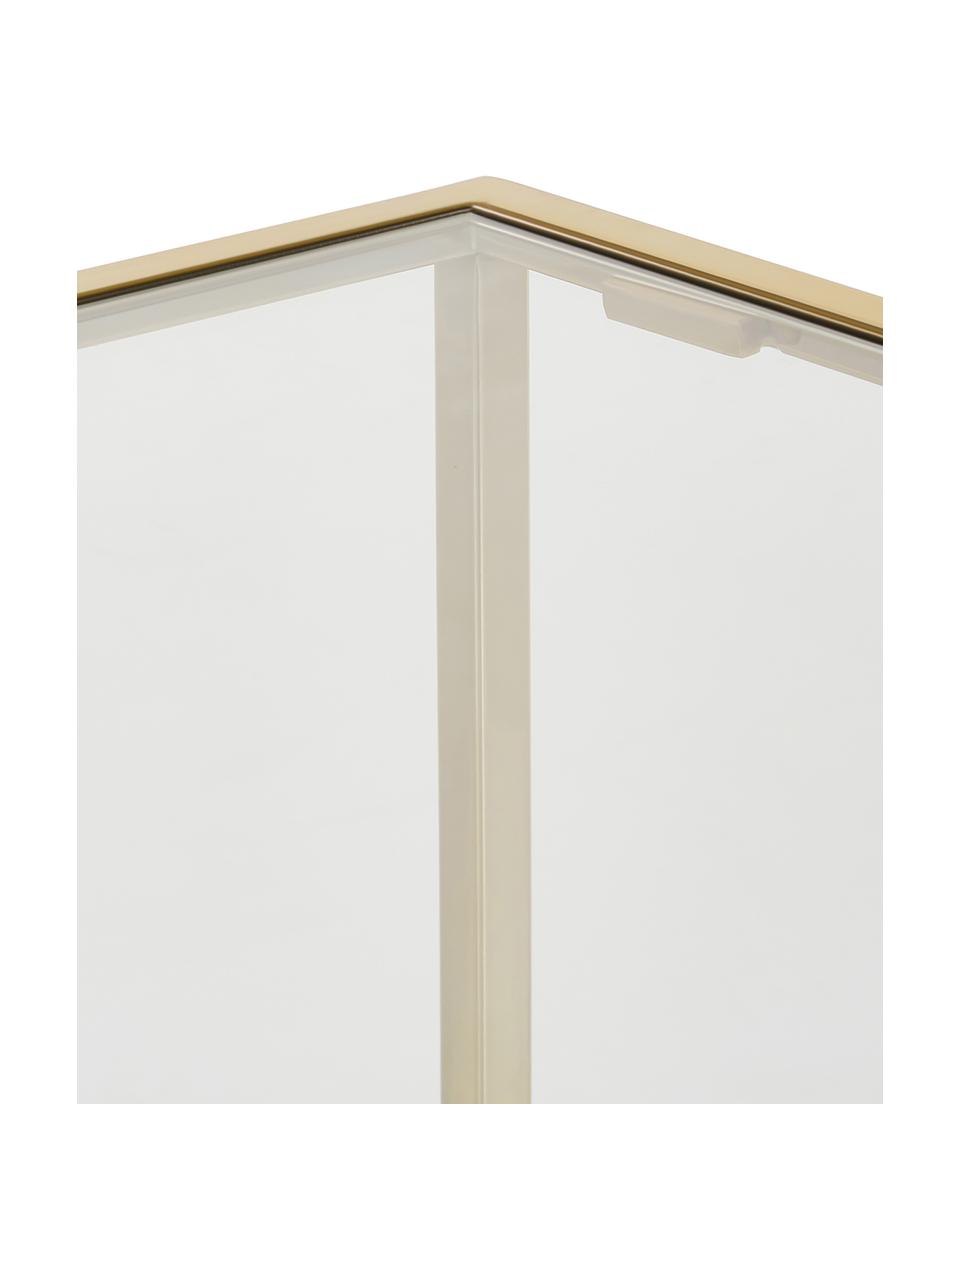 Mesa auxiliar Maya, tablero de vidrio, Tablero: vidrio laminado, Estructura: metal galvanizado, Transparente, dorado, An 45 x Al 50 cm